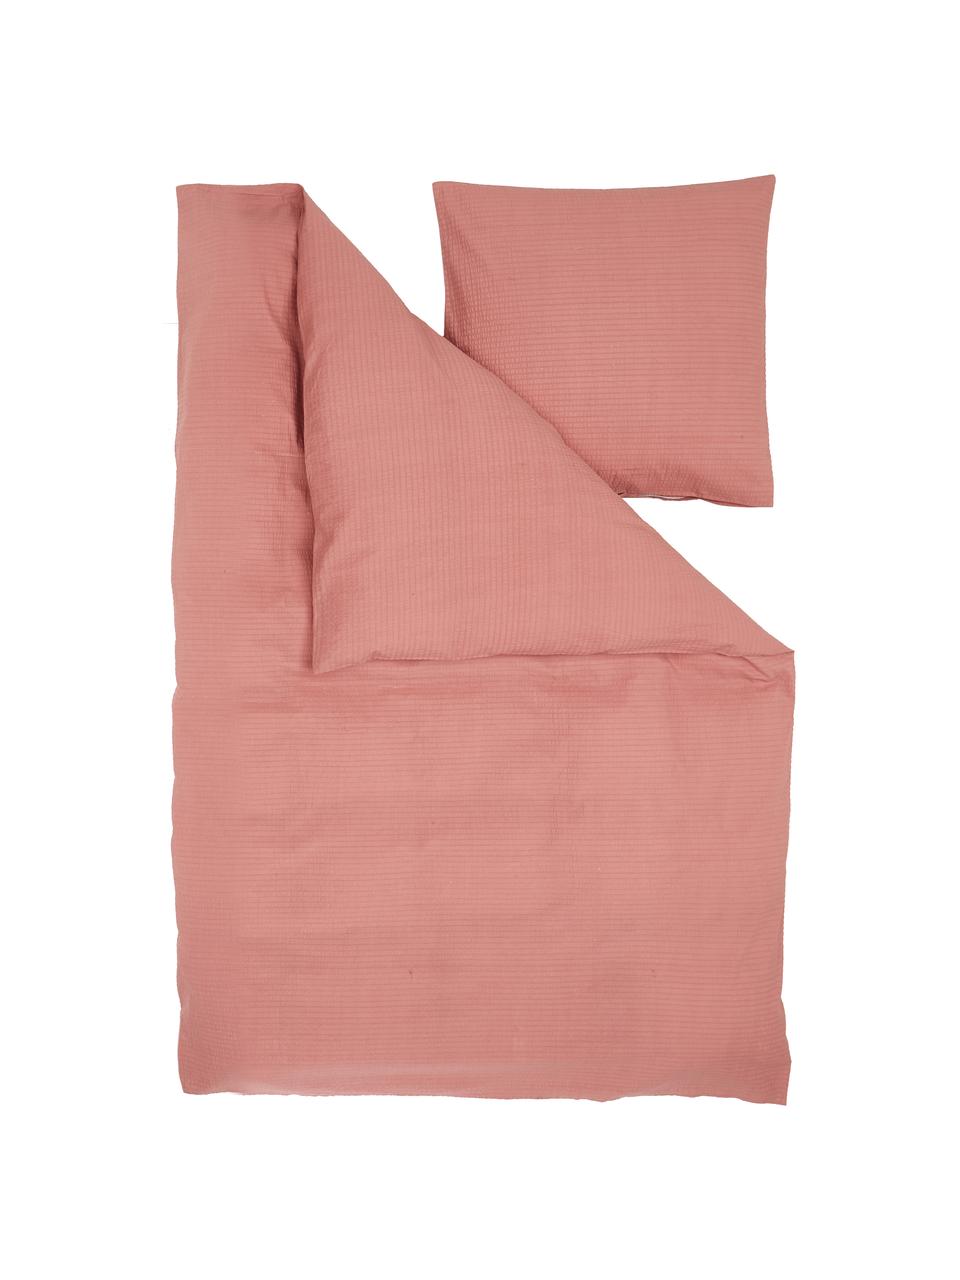 Krepová posteľná bielizeň z bavlny Wave, Staroružová, 155 x 220 cm + 1 vankúš 80 x 80 cm